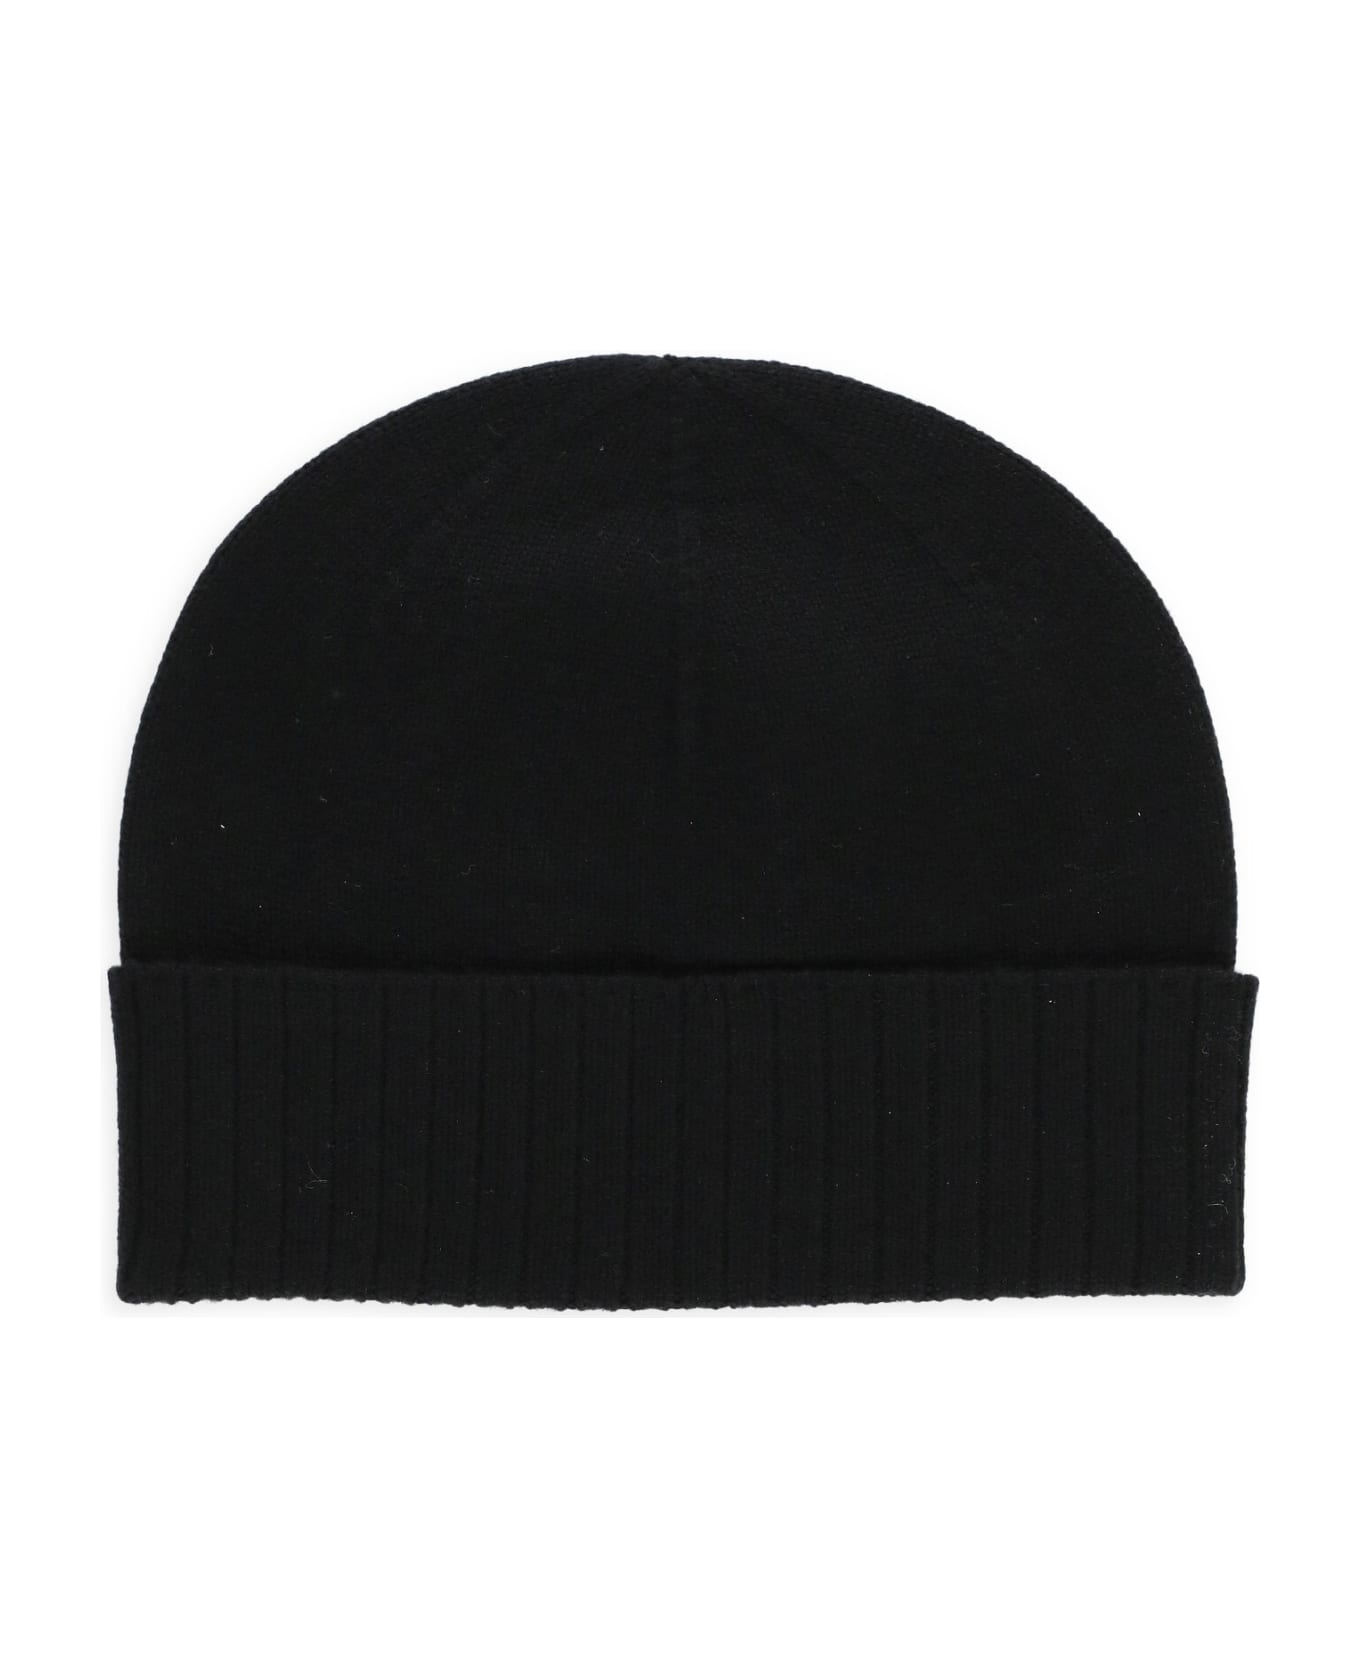 Kenzo Black Wool Beanie - Black 帽子